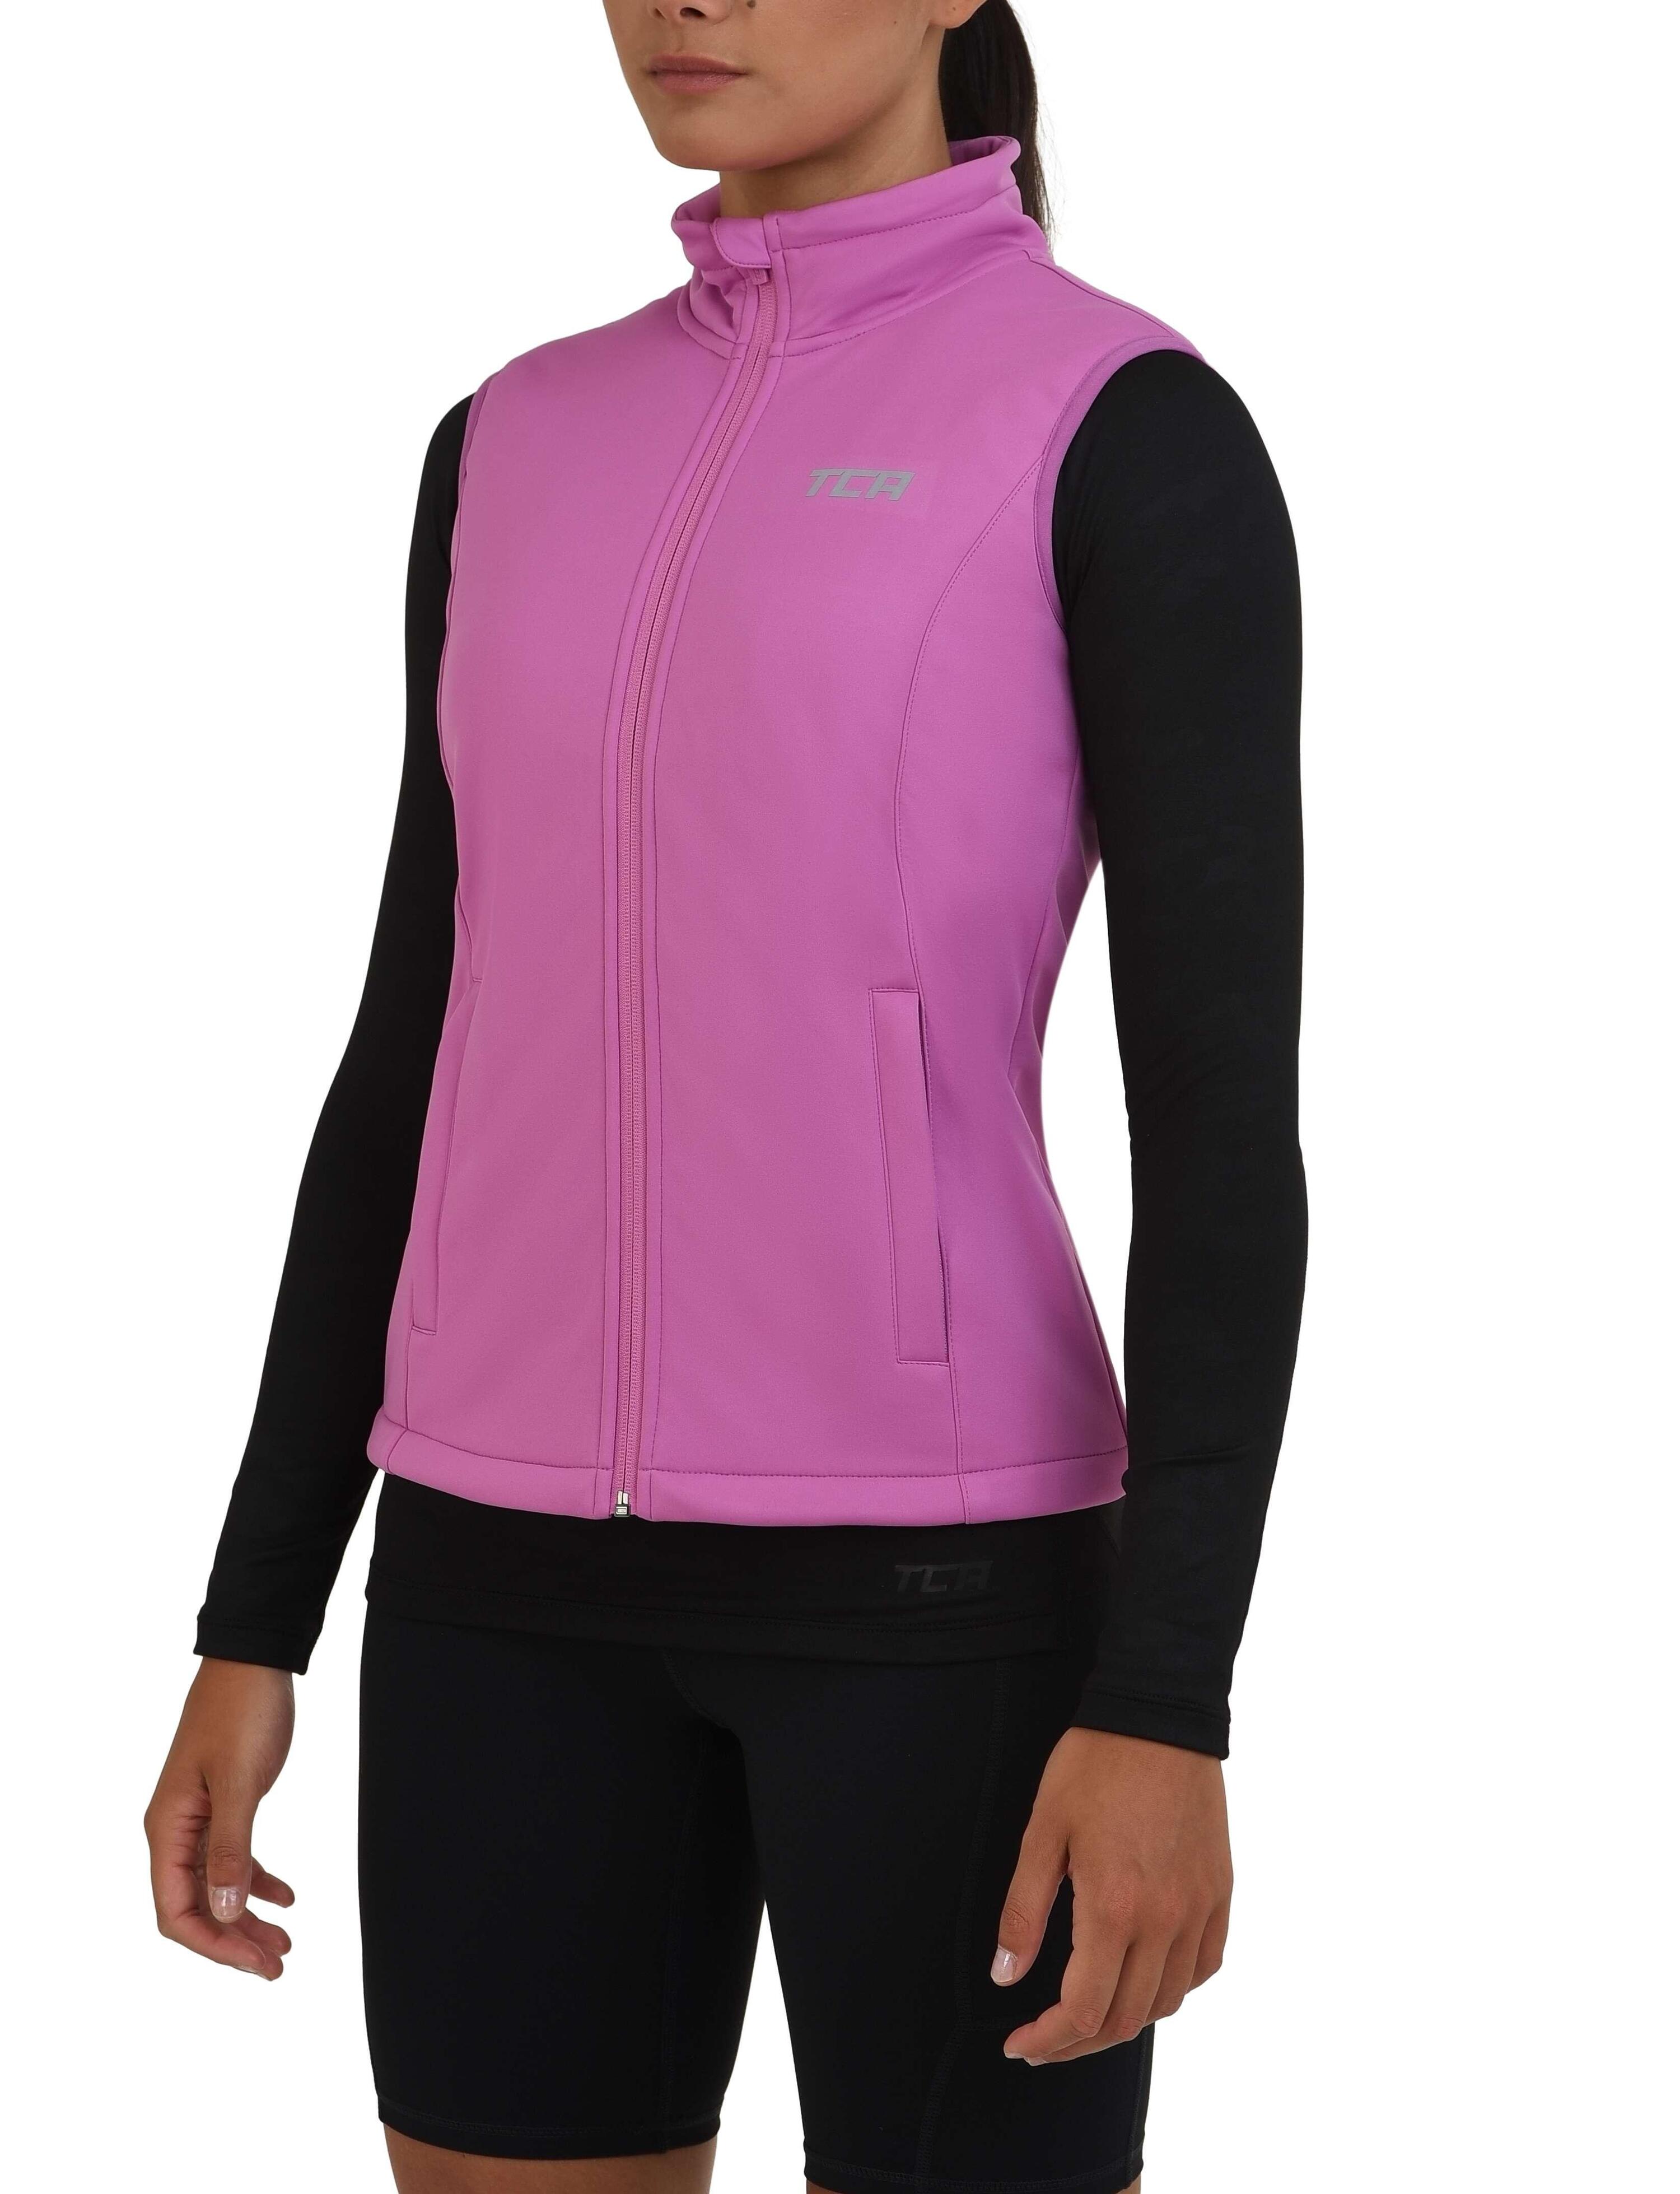 Women's Wind Proof Gilet with Zip Pockets - Spring Crocus (Pink) 1/4